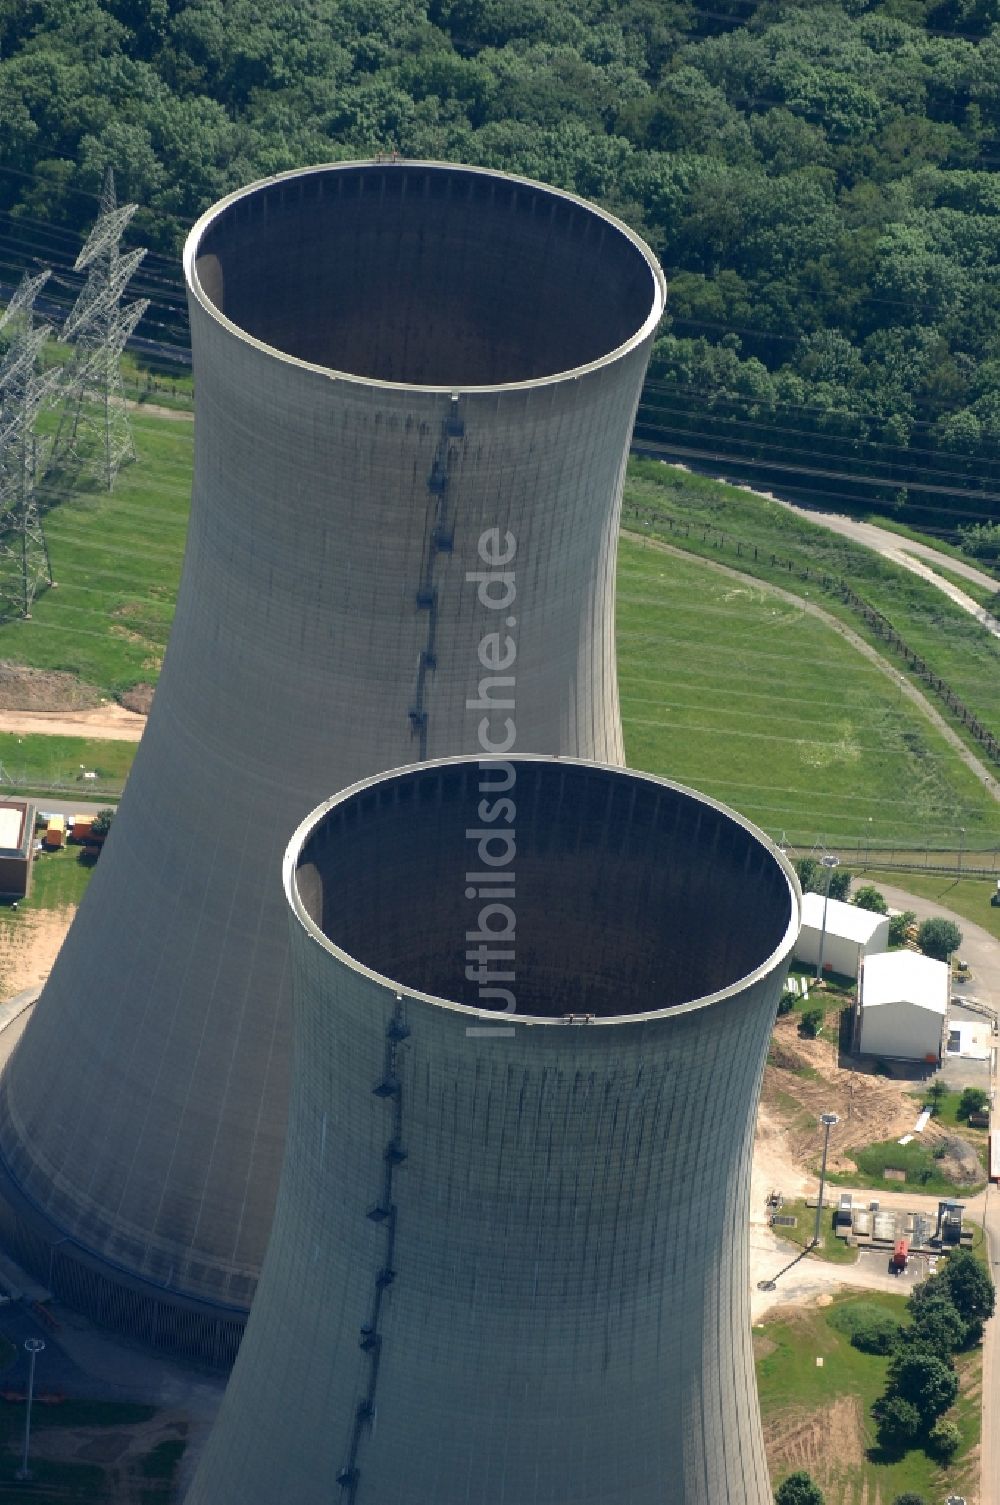 Luftaufnahme Grafenrheinfeld - Reaktorblöcke und Anlagen des AKW - KKW Kernkraftwerk in Grafenrheinfeld im Bundesland Bayern